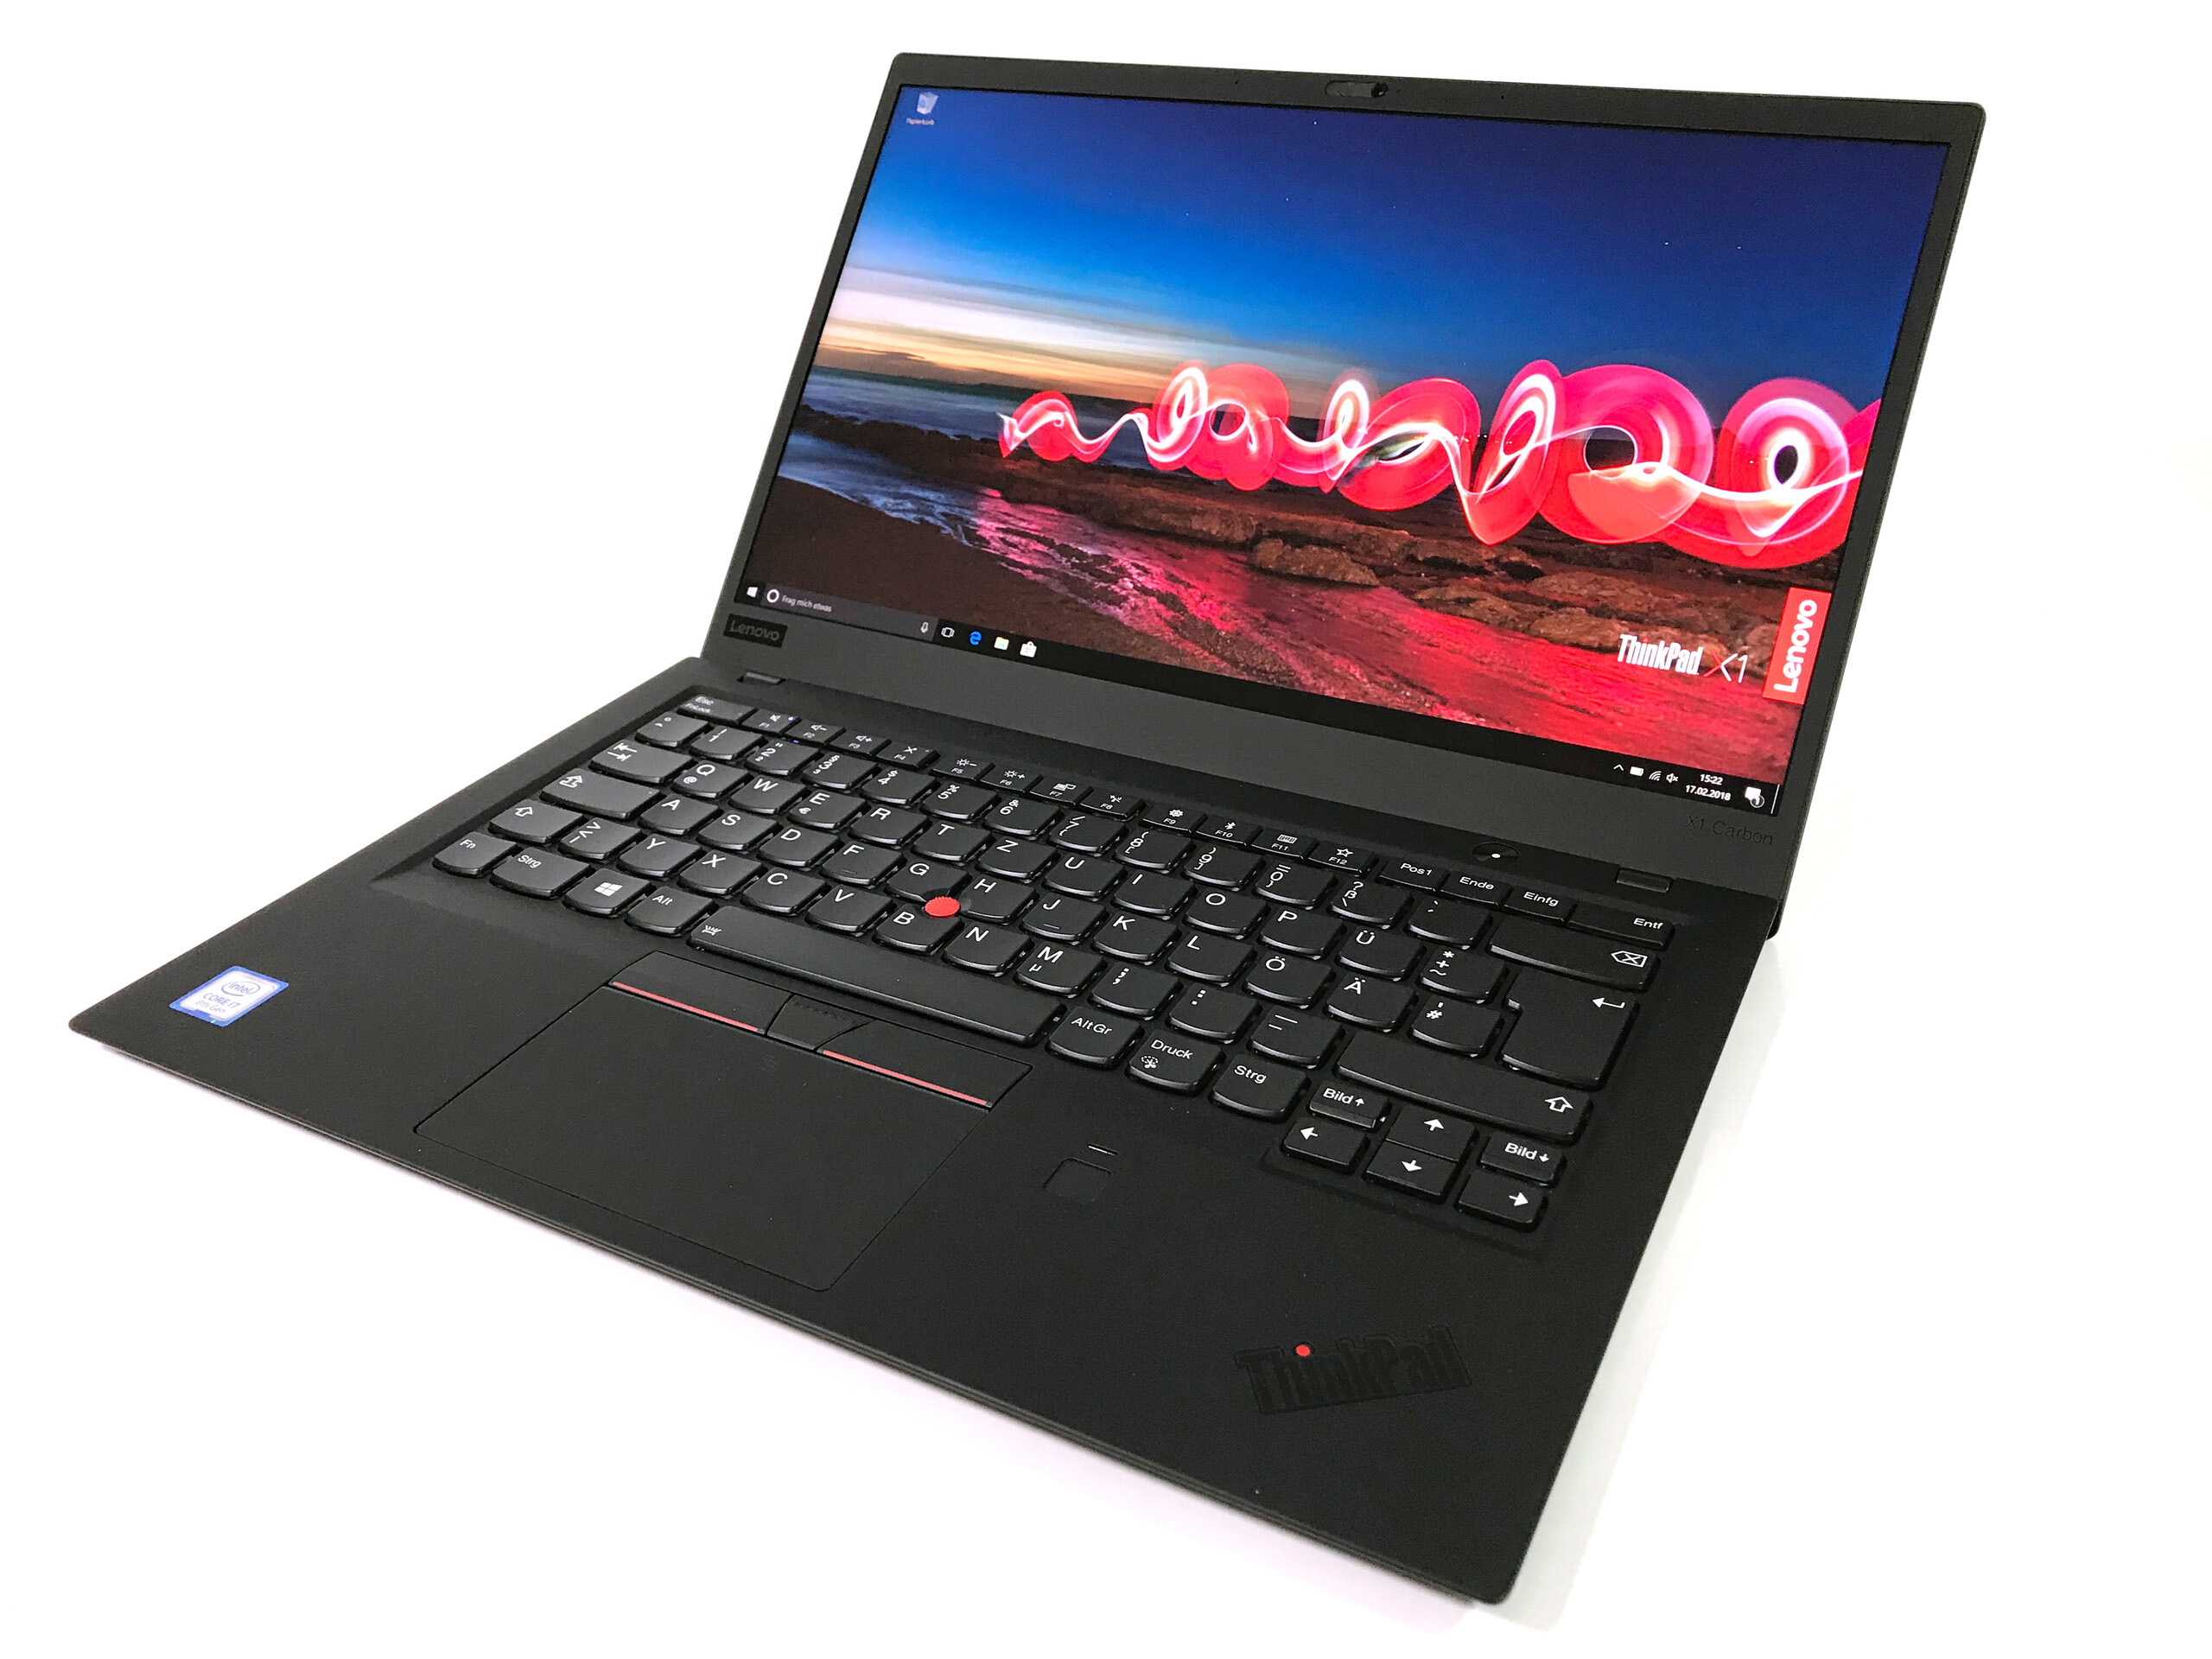 Laptop Second Hand Lenovo ThinkPad X1 CARBON, Intel Core i5-8350U 1.70 - 3.60GHz, 8GB DDR3, 240GB SSD, 14 Inch Full HD, Webcam